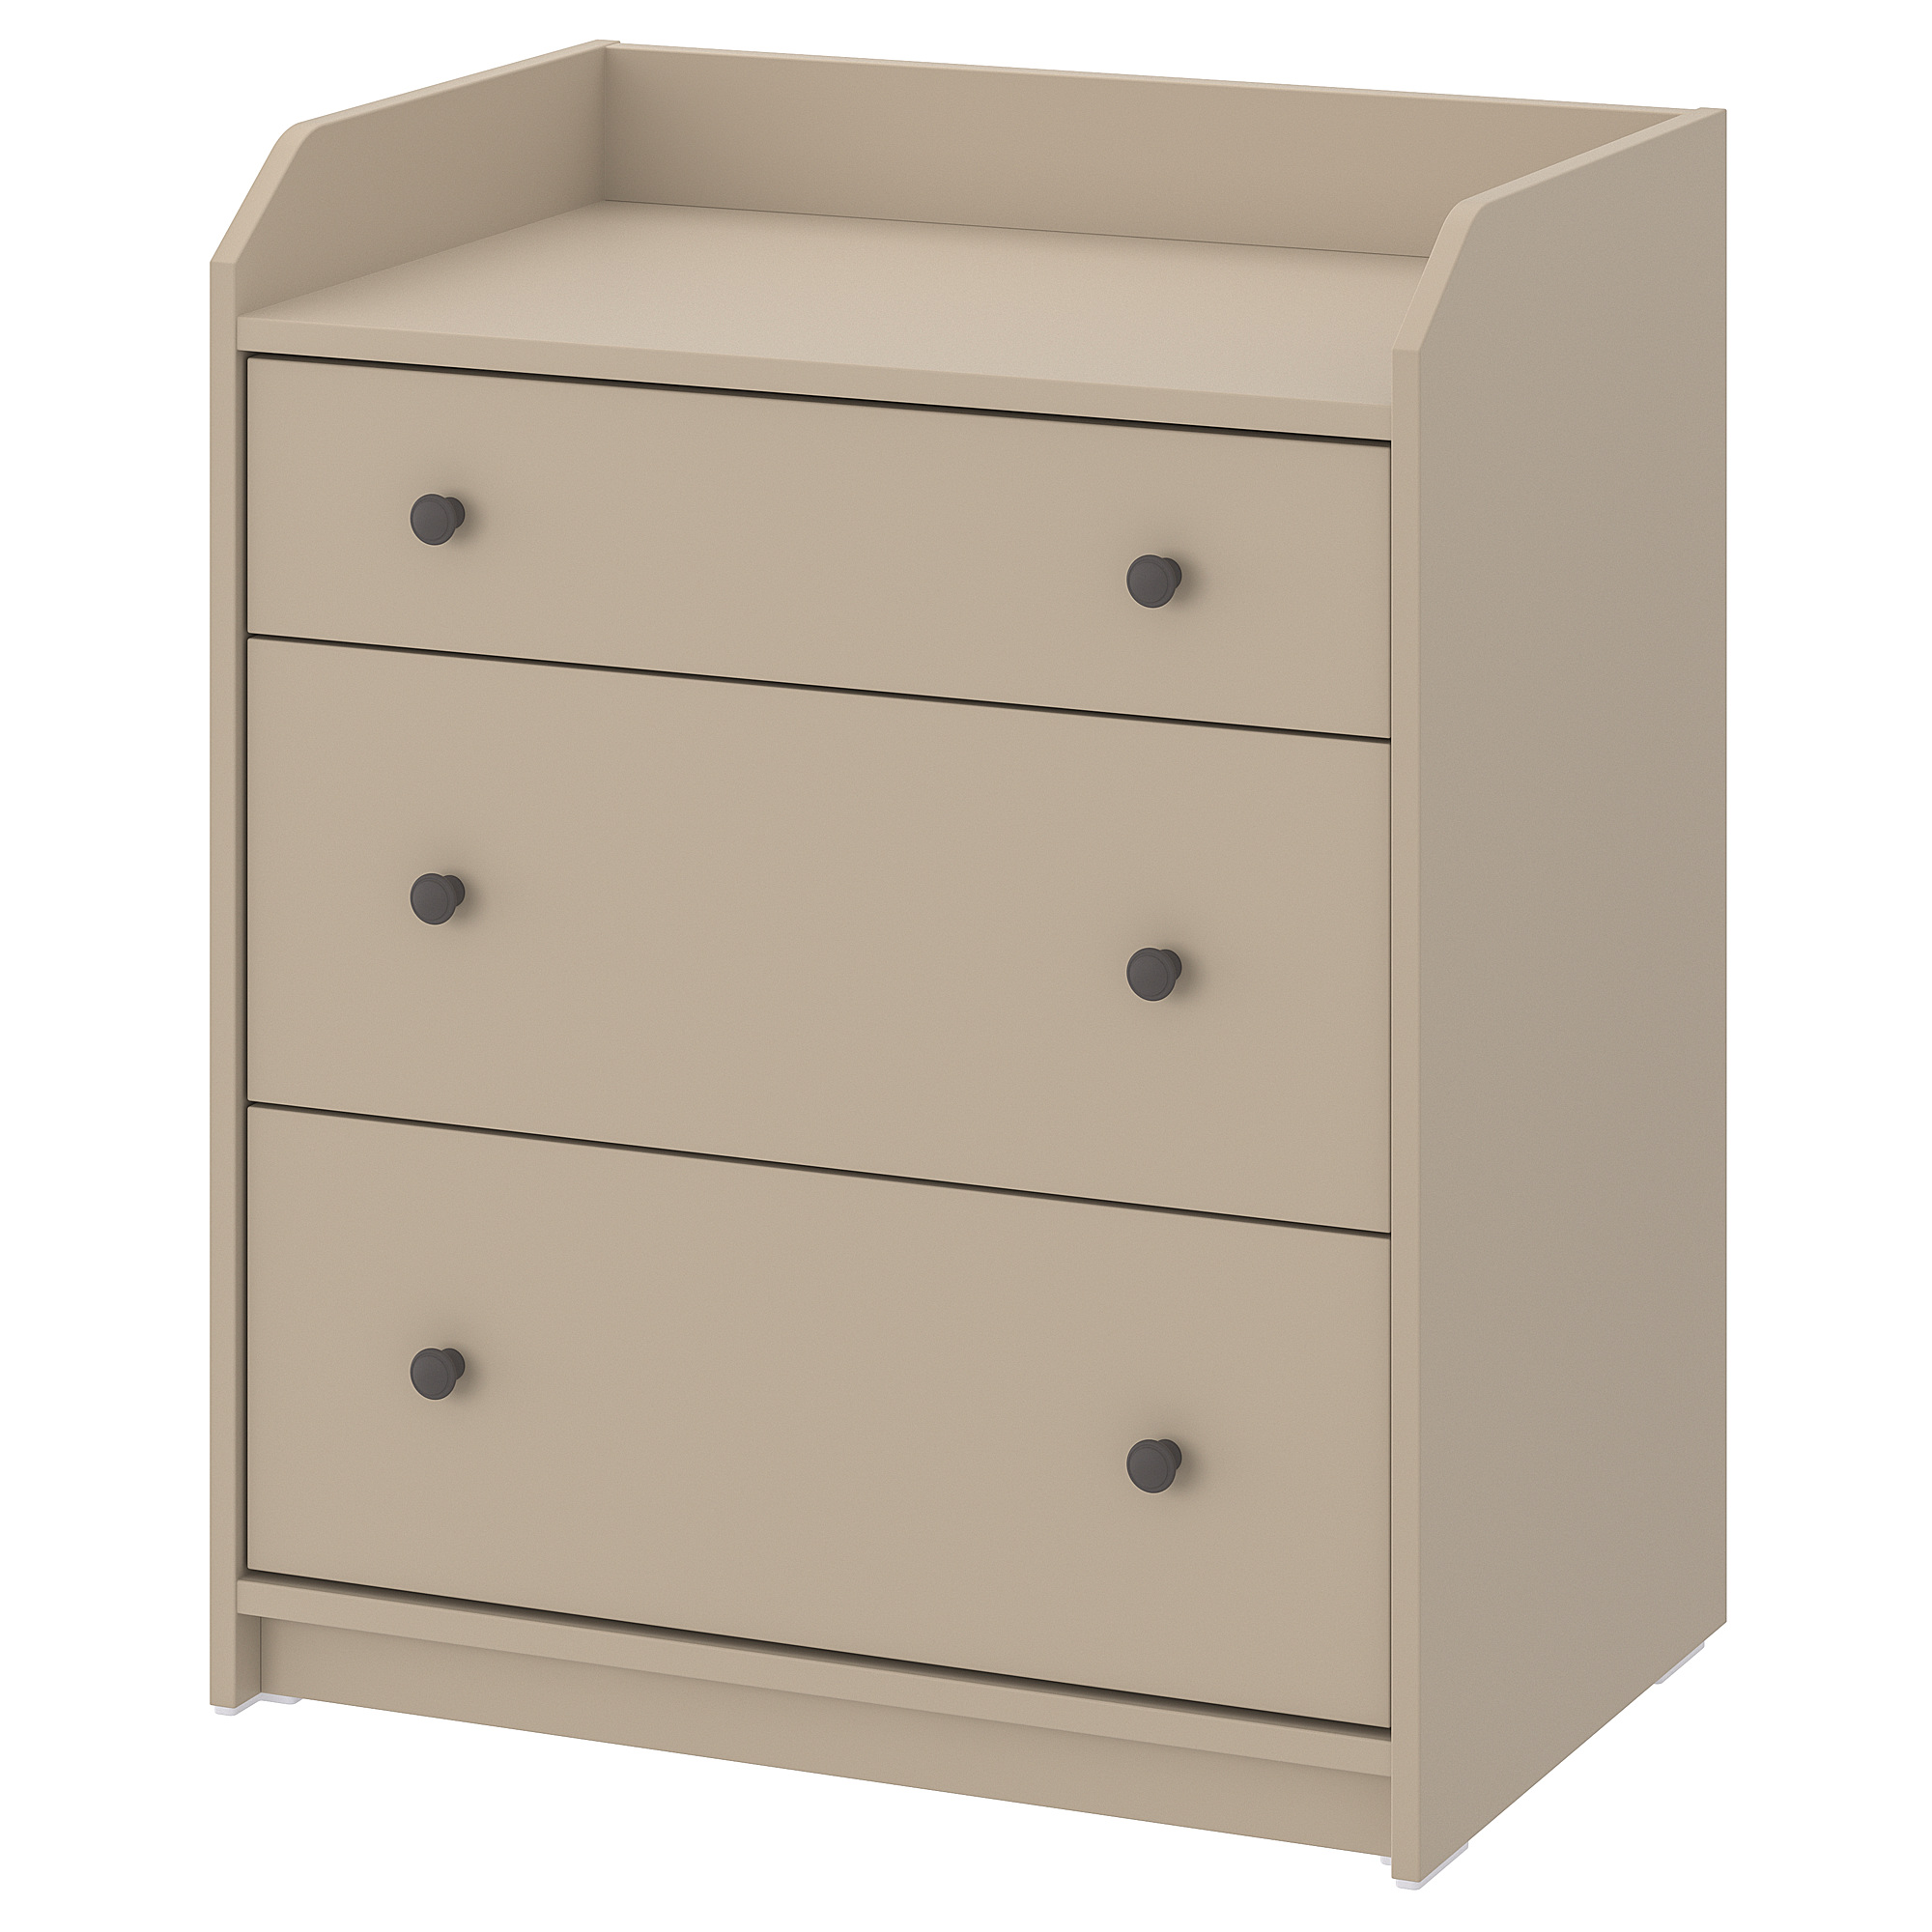 HAUGA chest of 3 drawers